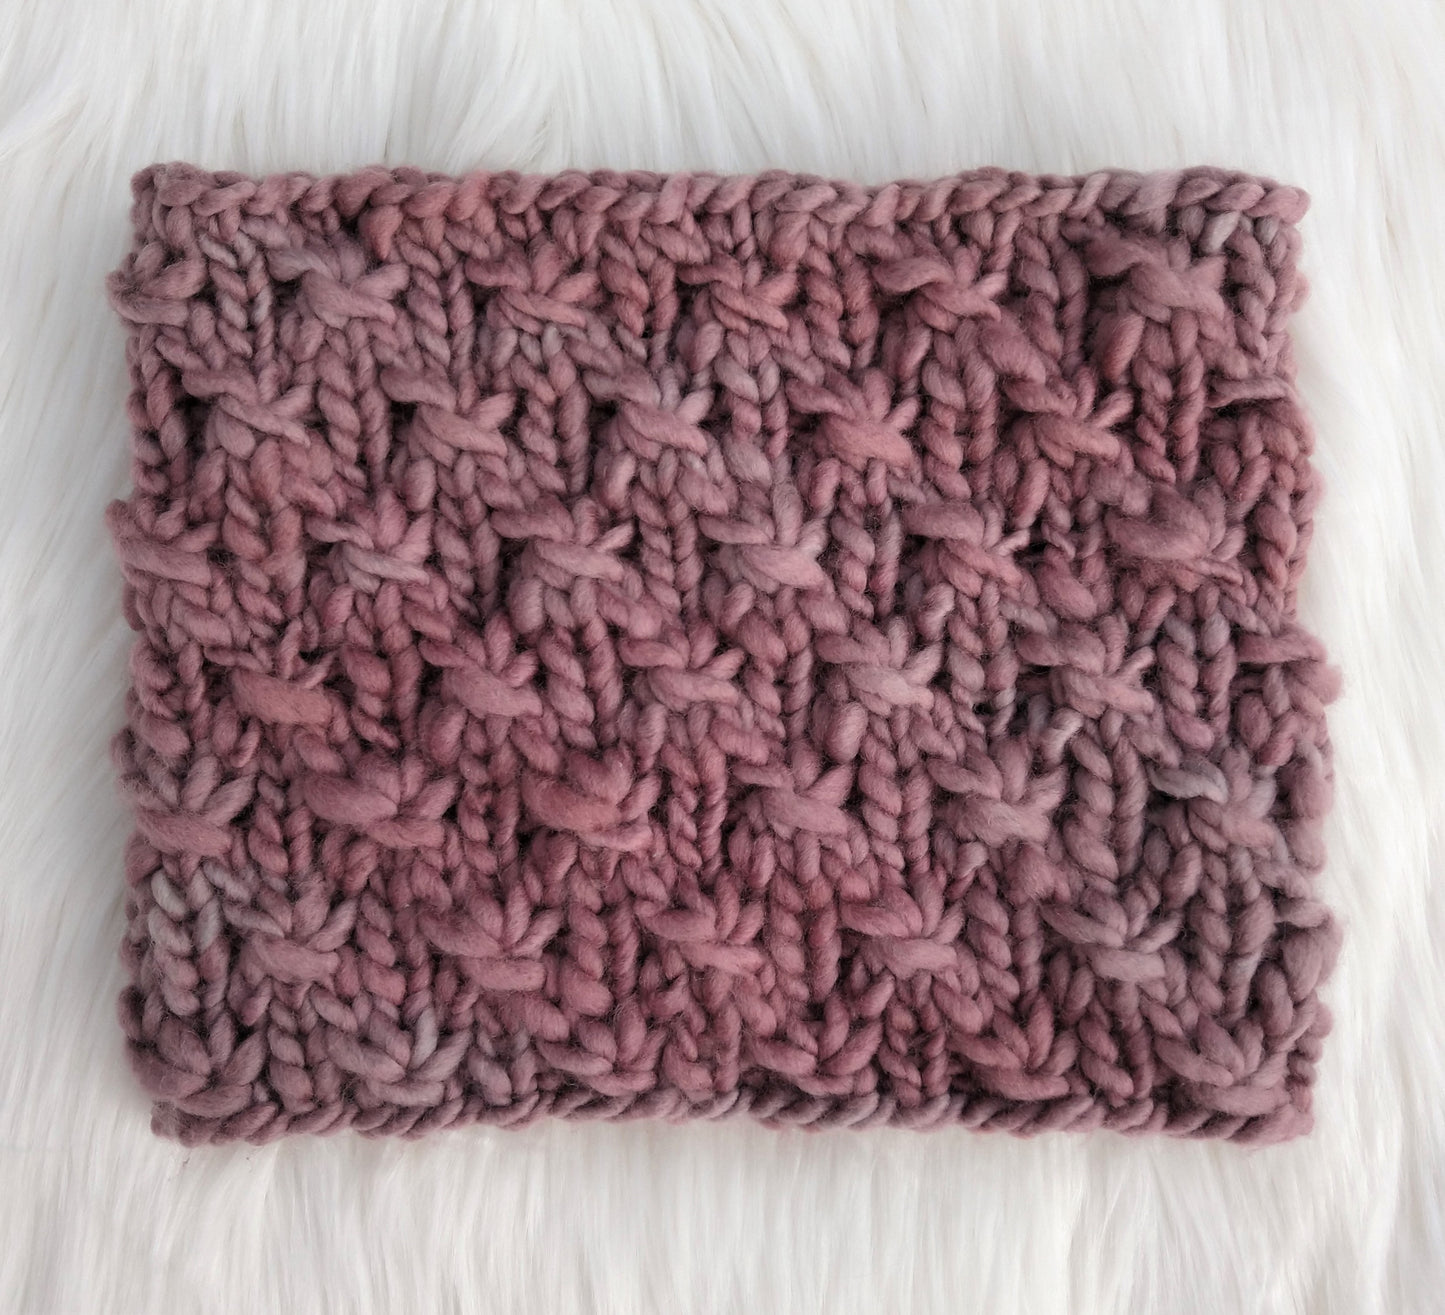 Granger Cowl Knitting Pattern